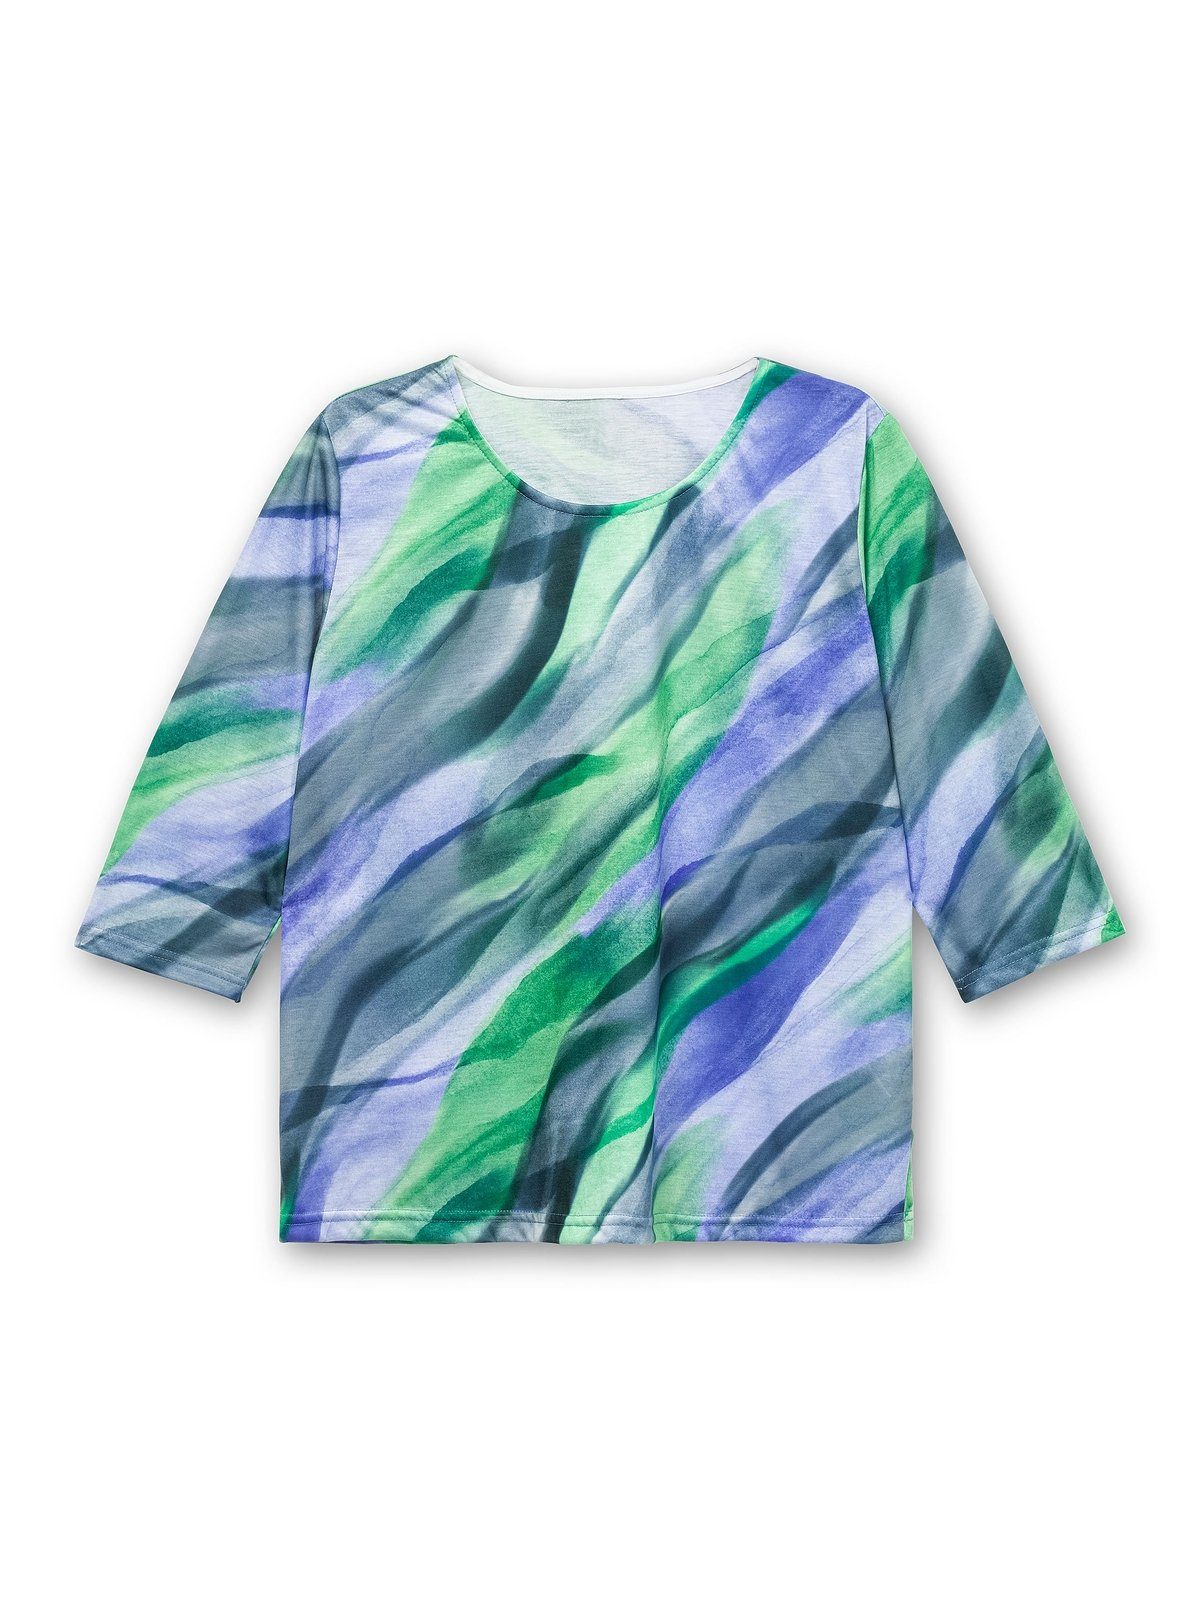 Optik bedruckt Sheego Große Größen in Alloverdruck royalblau-grasgrün 3/4-Arm-Shirt mit gebatikter